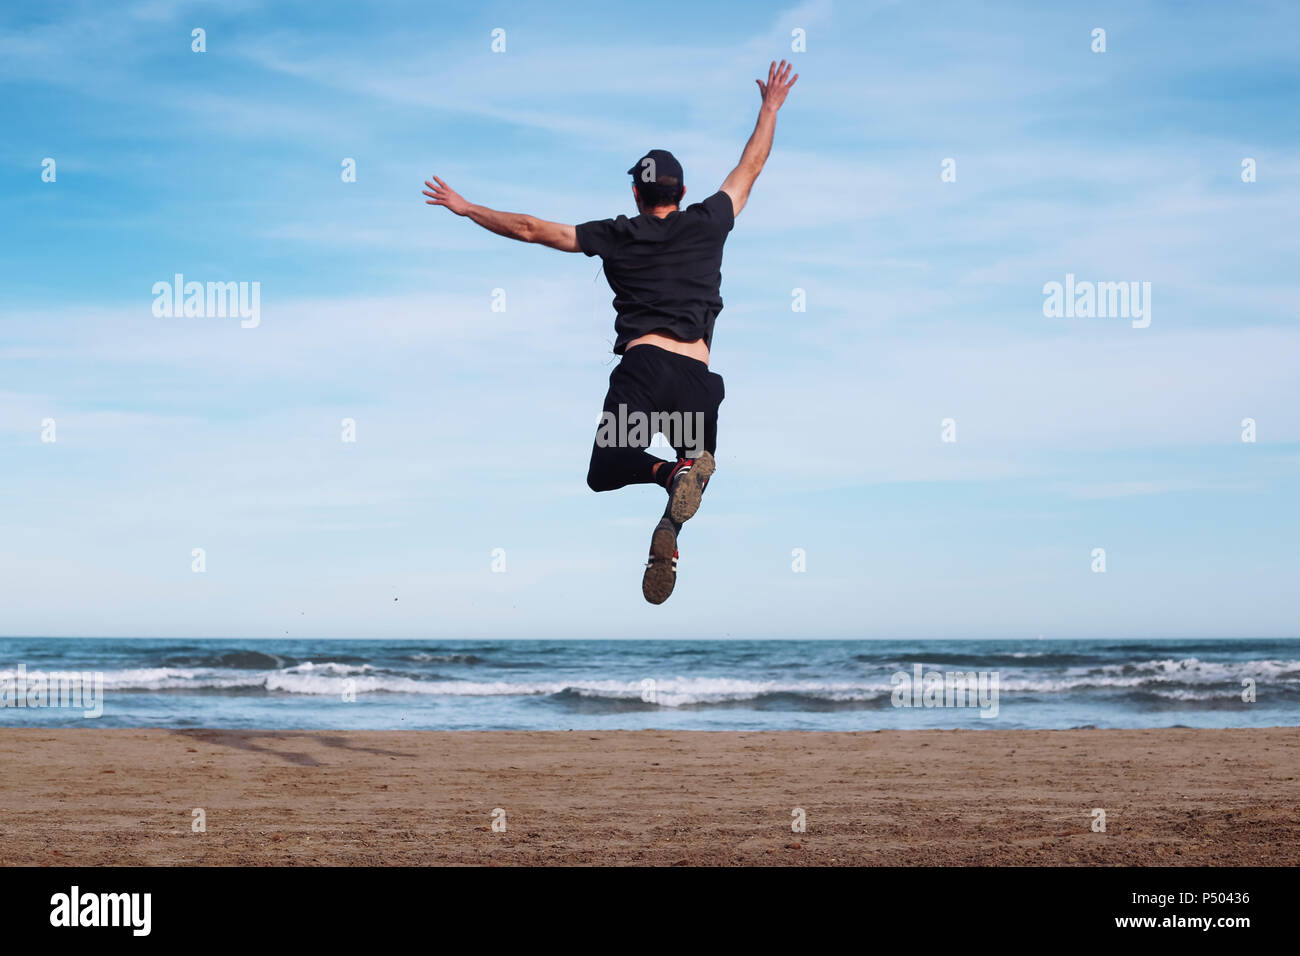 Vista posteriore dell'uomo saltare in aria sulla spiaggia Foto Stock